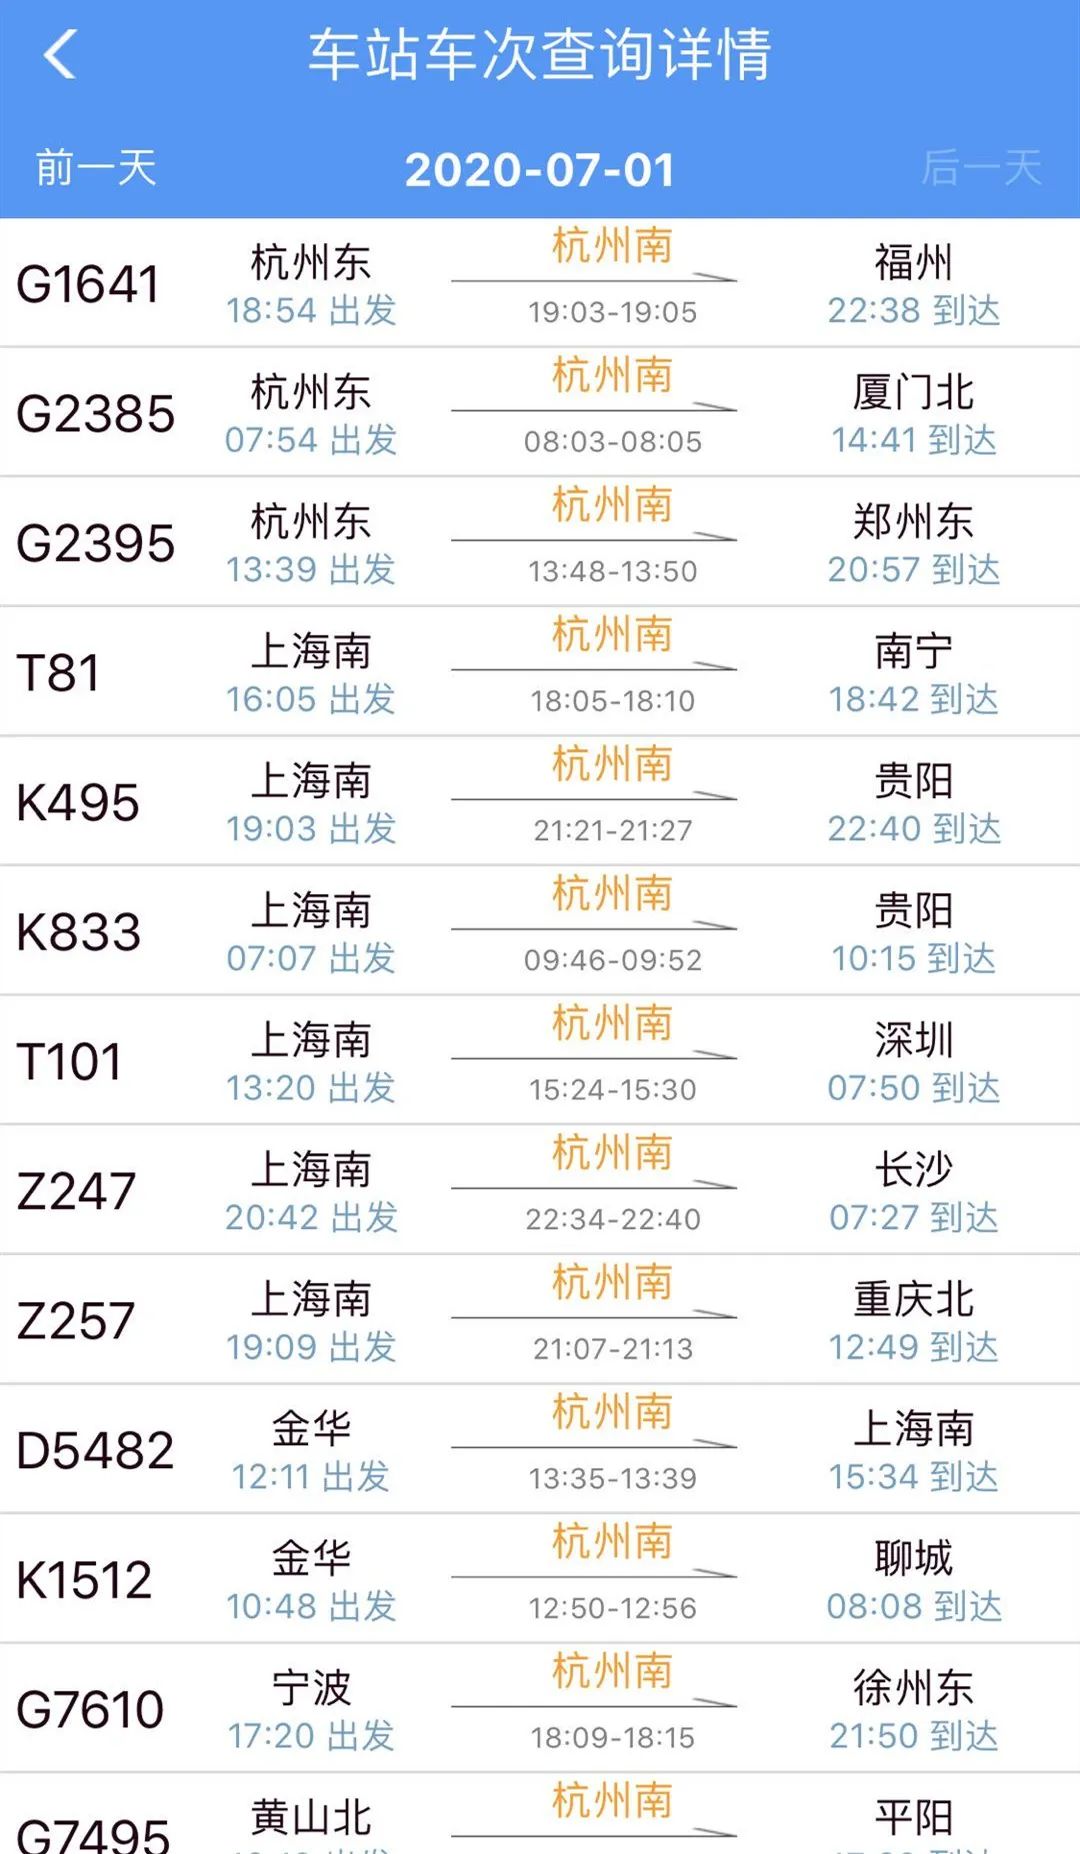 好消息,12306官网已经能够买到杭州南站的火车票